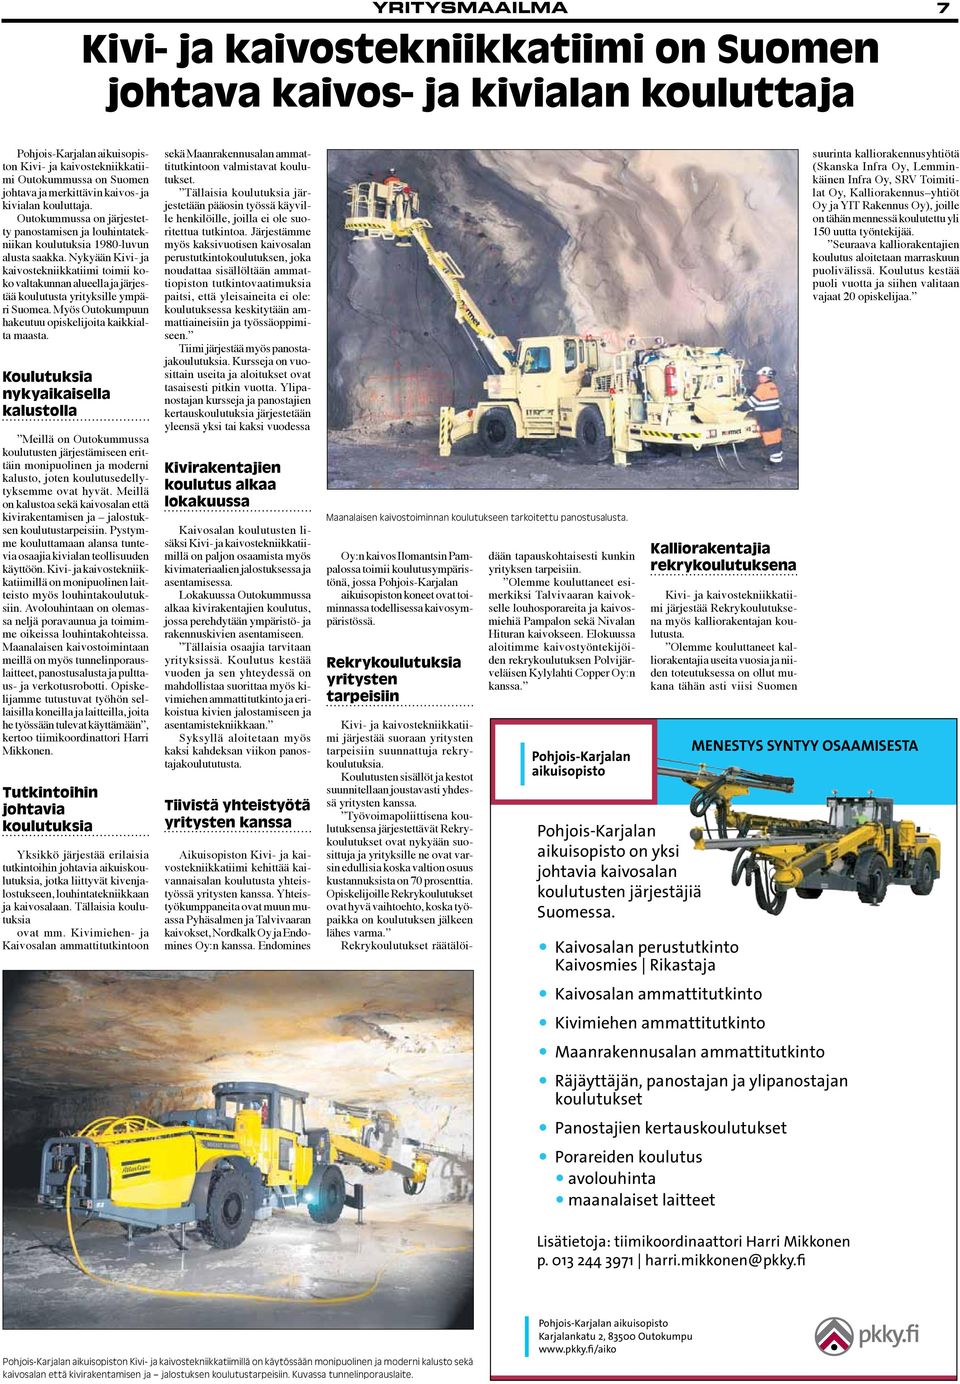 Nykyään Kivi- ja kaivostekniikkatiimi toimii koko valtakunnan alueella ja järjestää koulutusta yrityksille ympäri Suomea. Myös Outokumpuun hakeutuu opiskelijoita kaikkialta maasta.